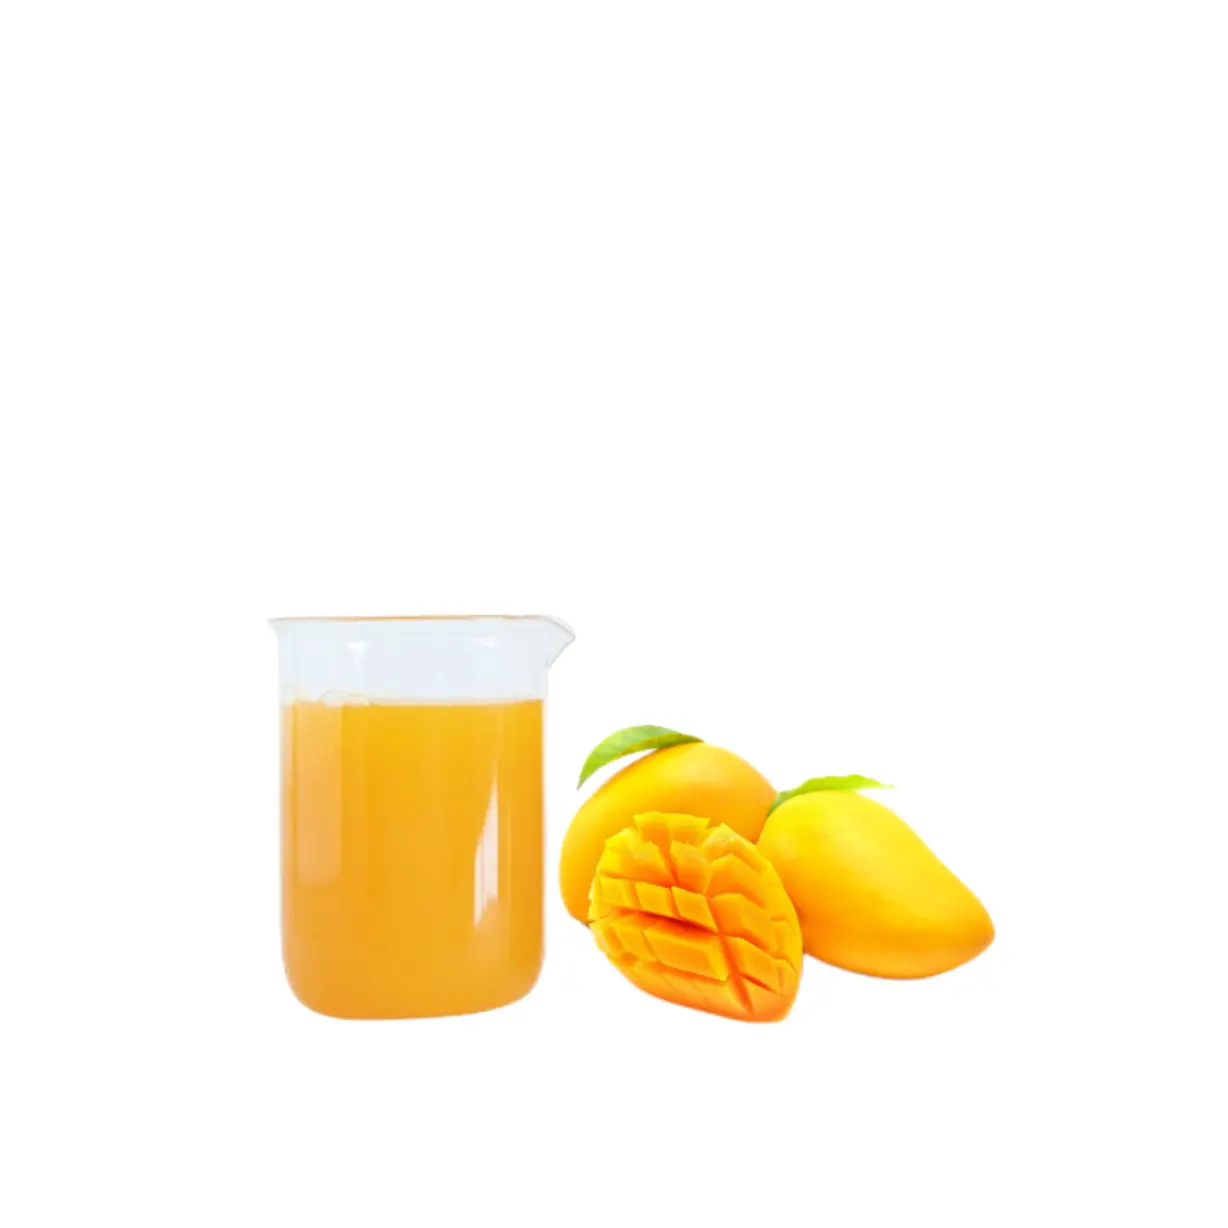 Brix 19 TA 0.55 aseptic bag drum 200kg Pure Natural Beverage drink raw material fruit Puree pulp mango NFC juice original